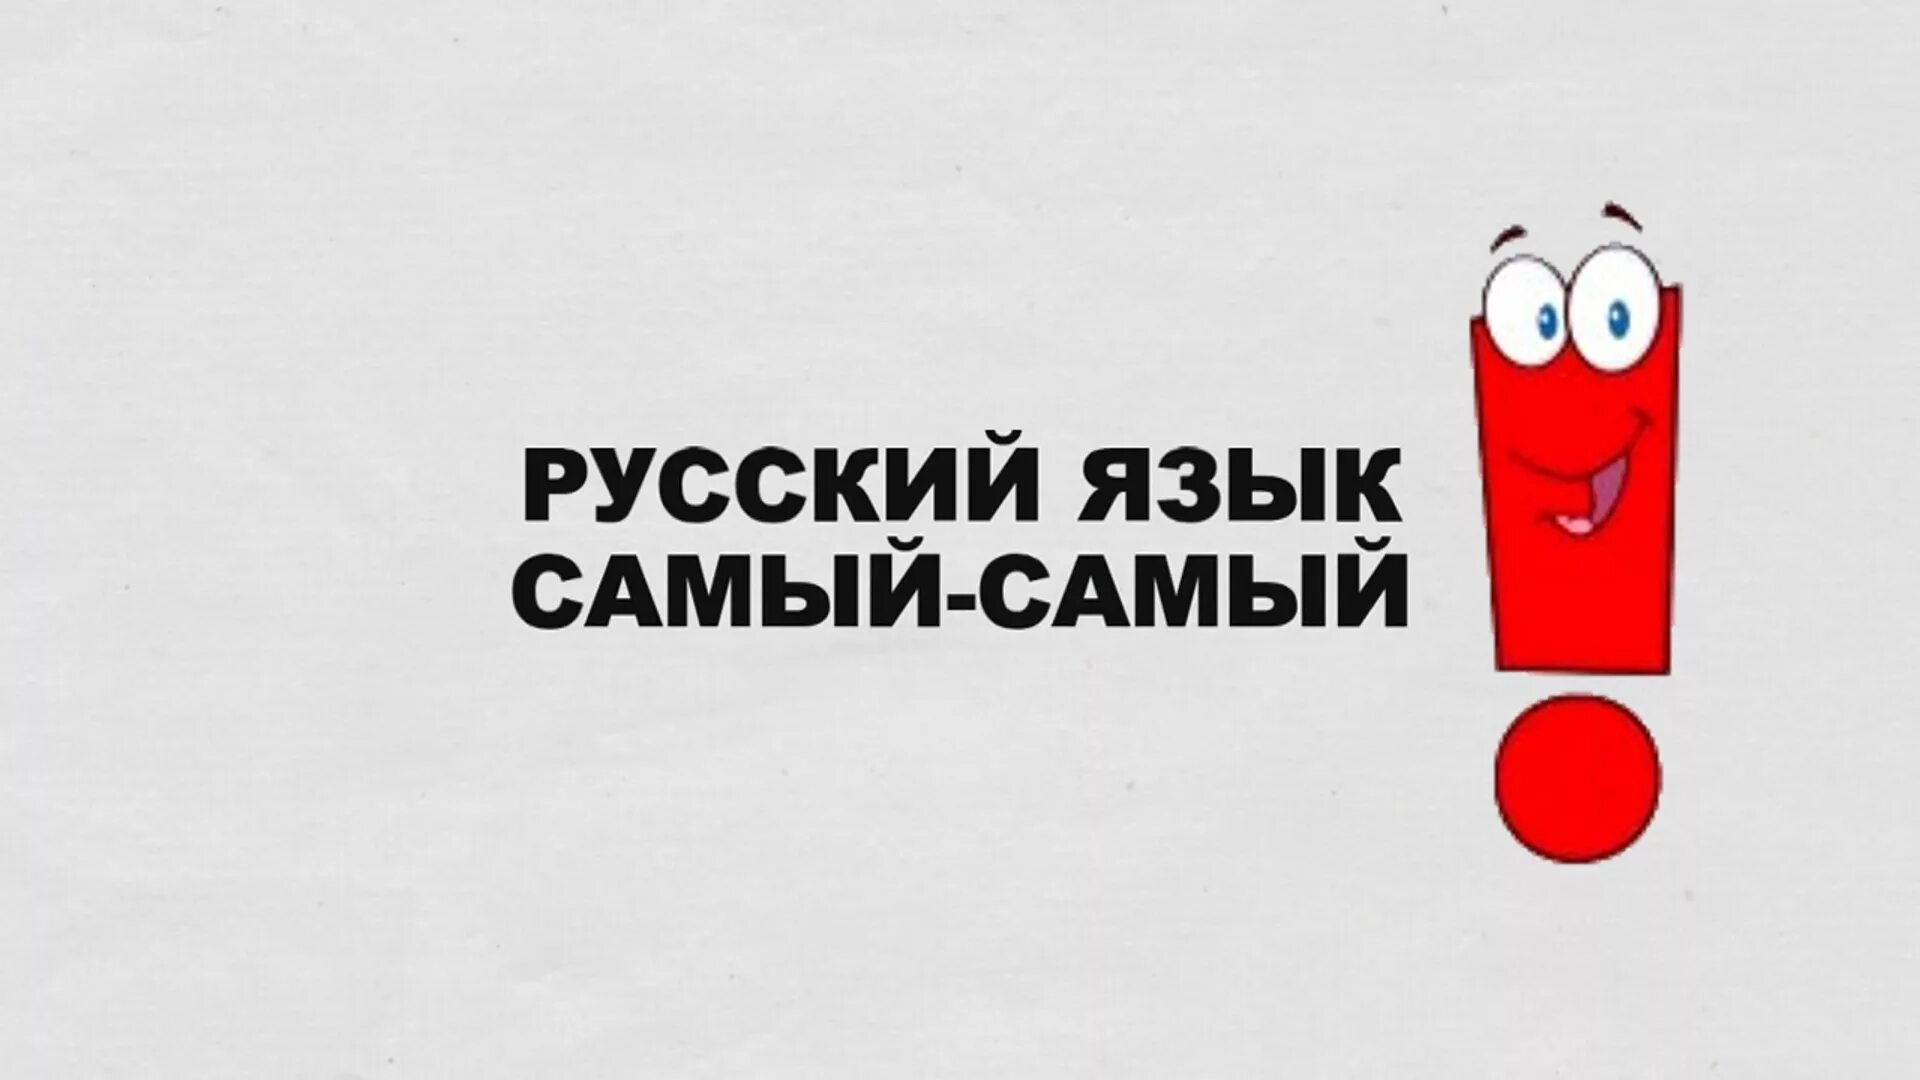 Русский язык всемогущий. Русский язык. Социальная реклама русского языка. Русский язык лучший. Я русский.